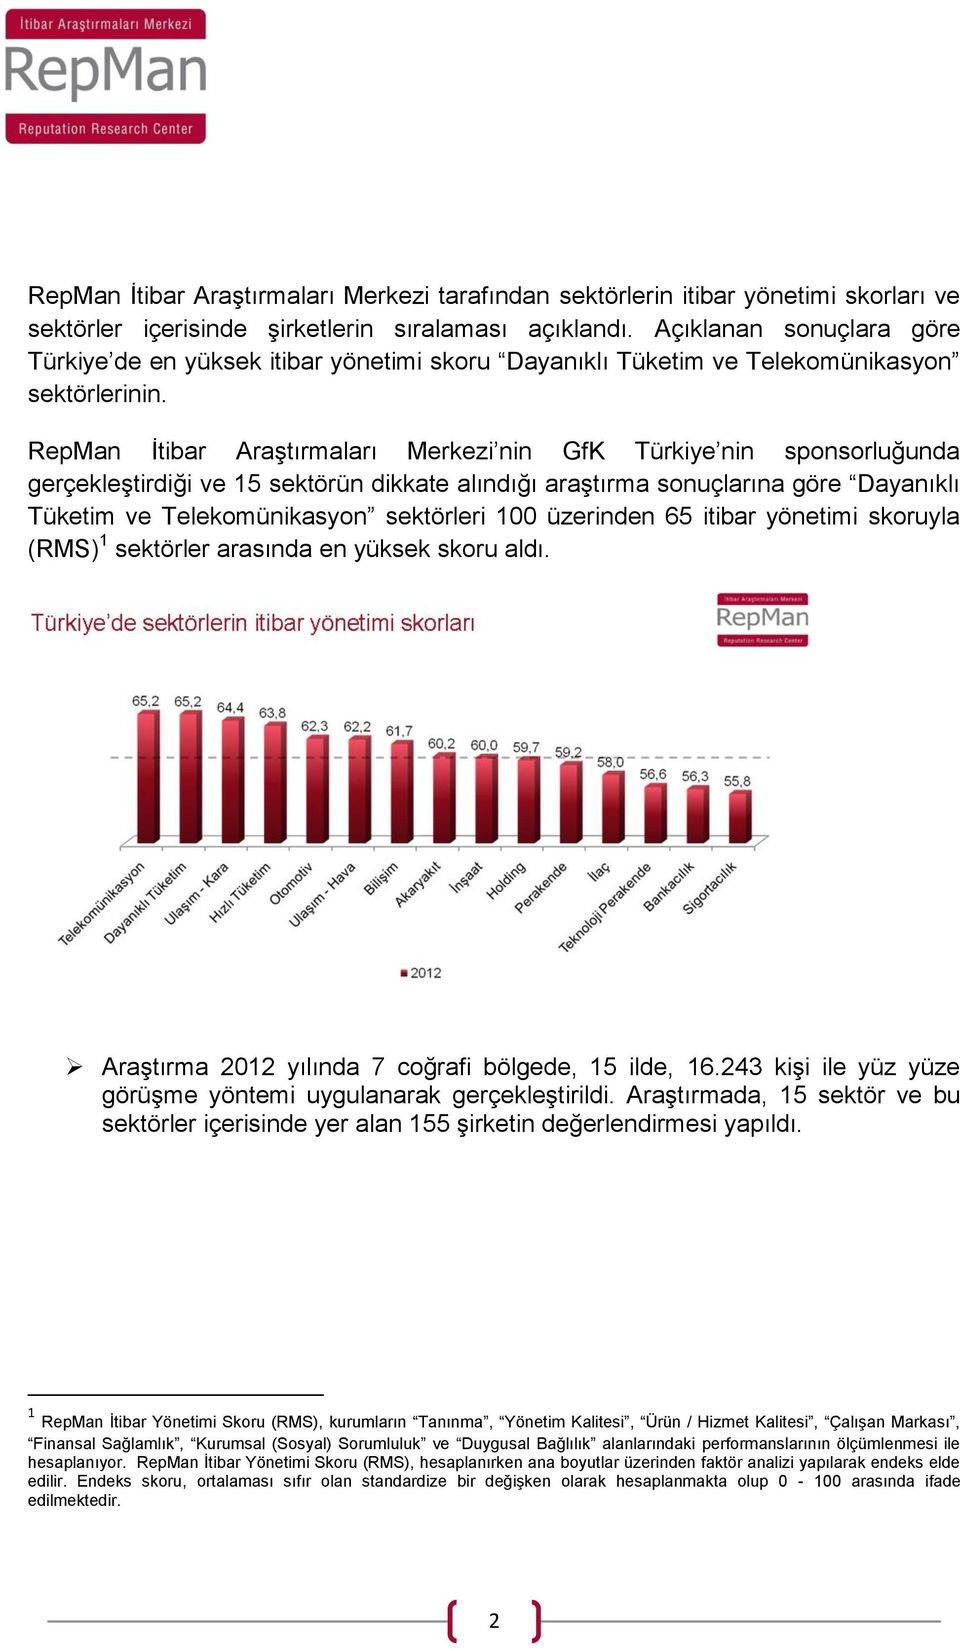 RepMan İtibar Araştırmaları Merkezi nin GfK Türkiye nin sponsorluğunda gerçekleştirdiği ve 15 sektörün dikkate alındığı araştırma sonuçlarına göre Dayanıklı Tüketim ve Telekomünikasyon sektörleri 100